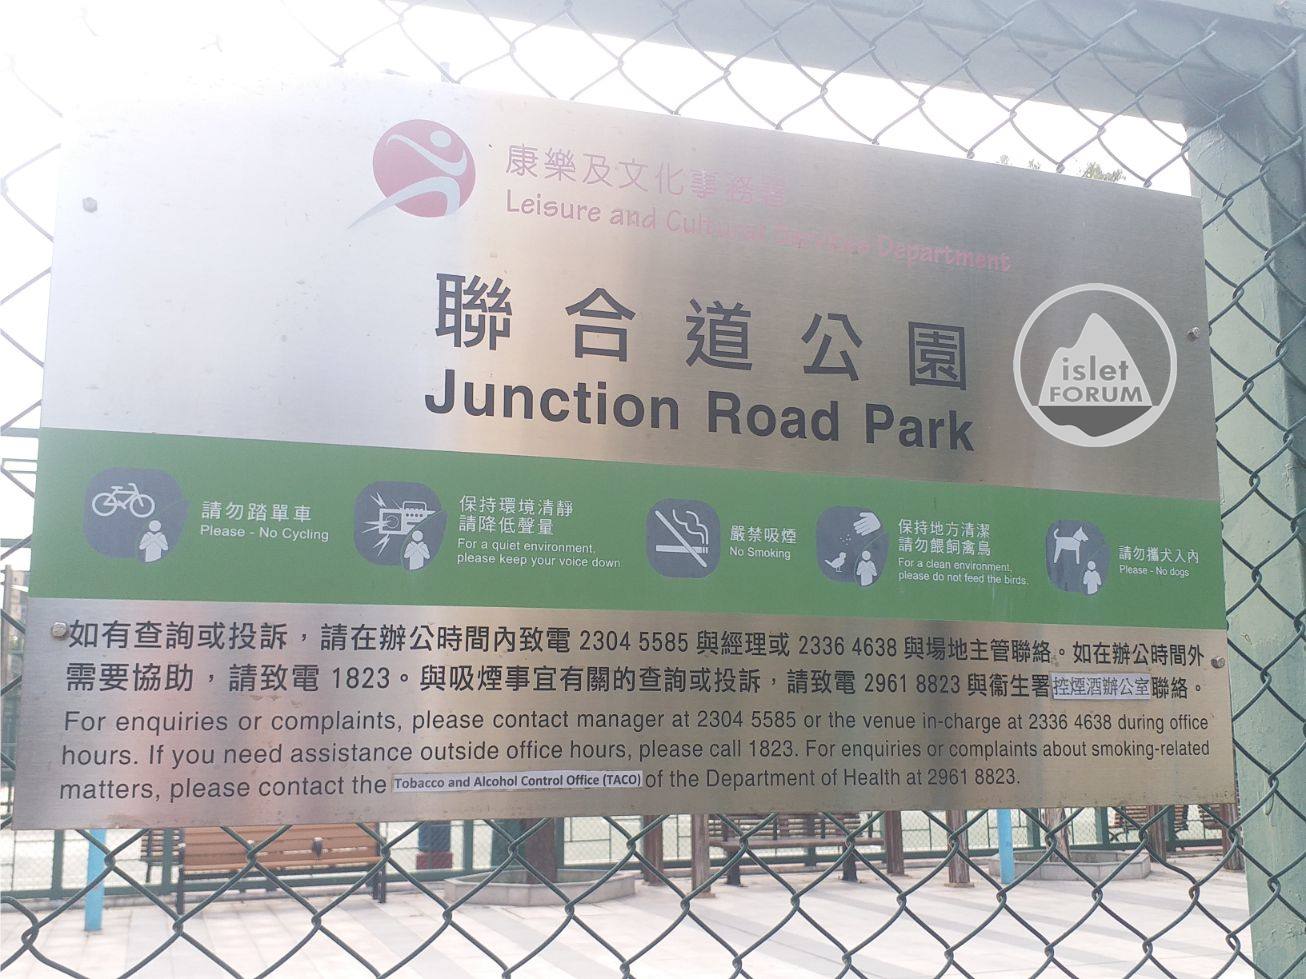 聯合道公園junction road park (3).jpg